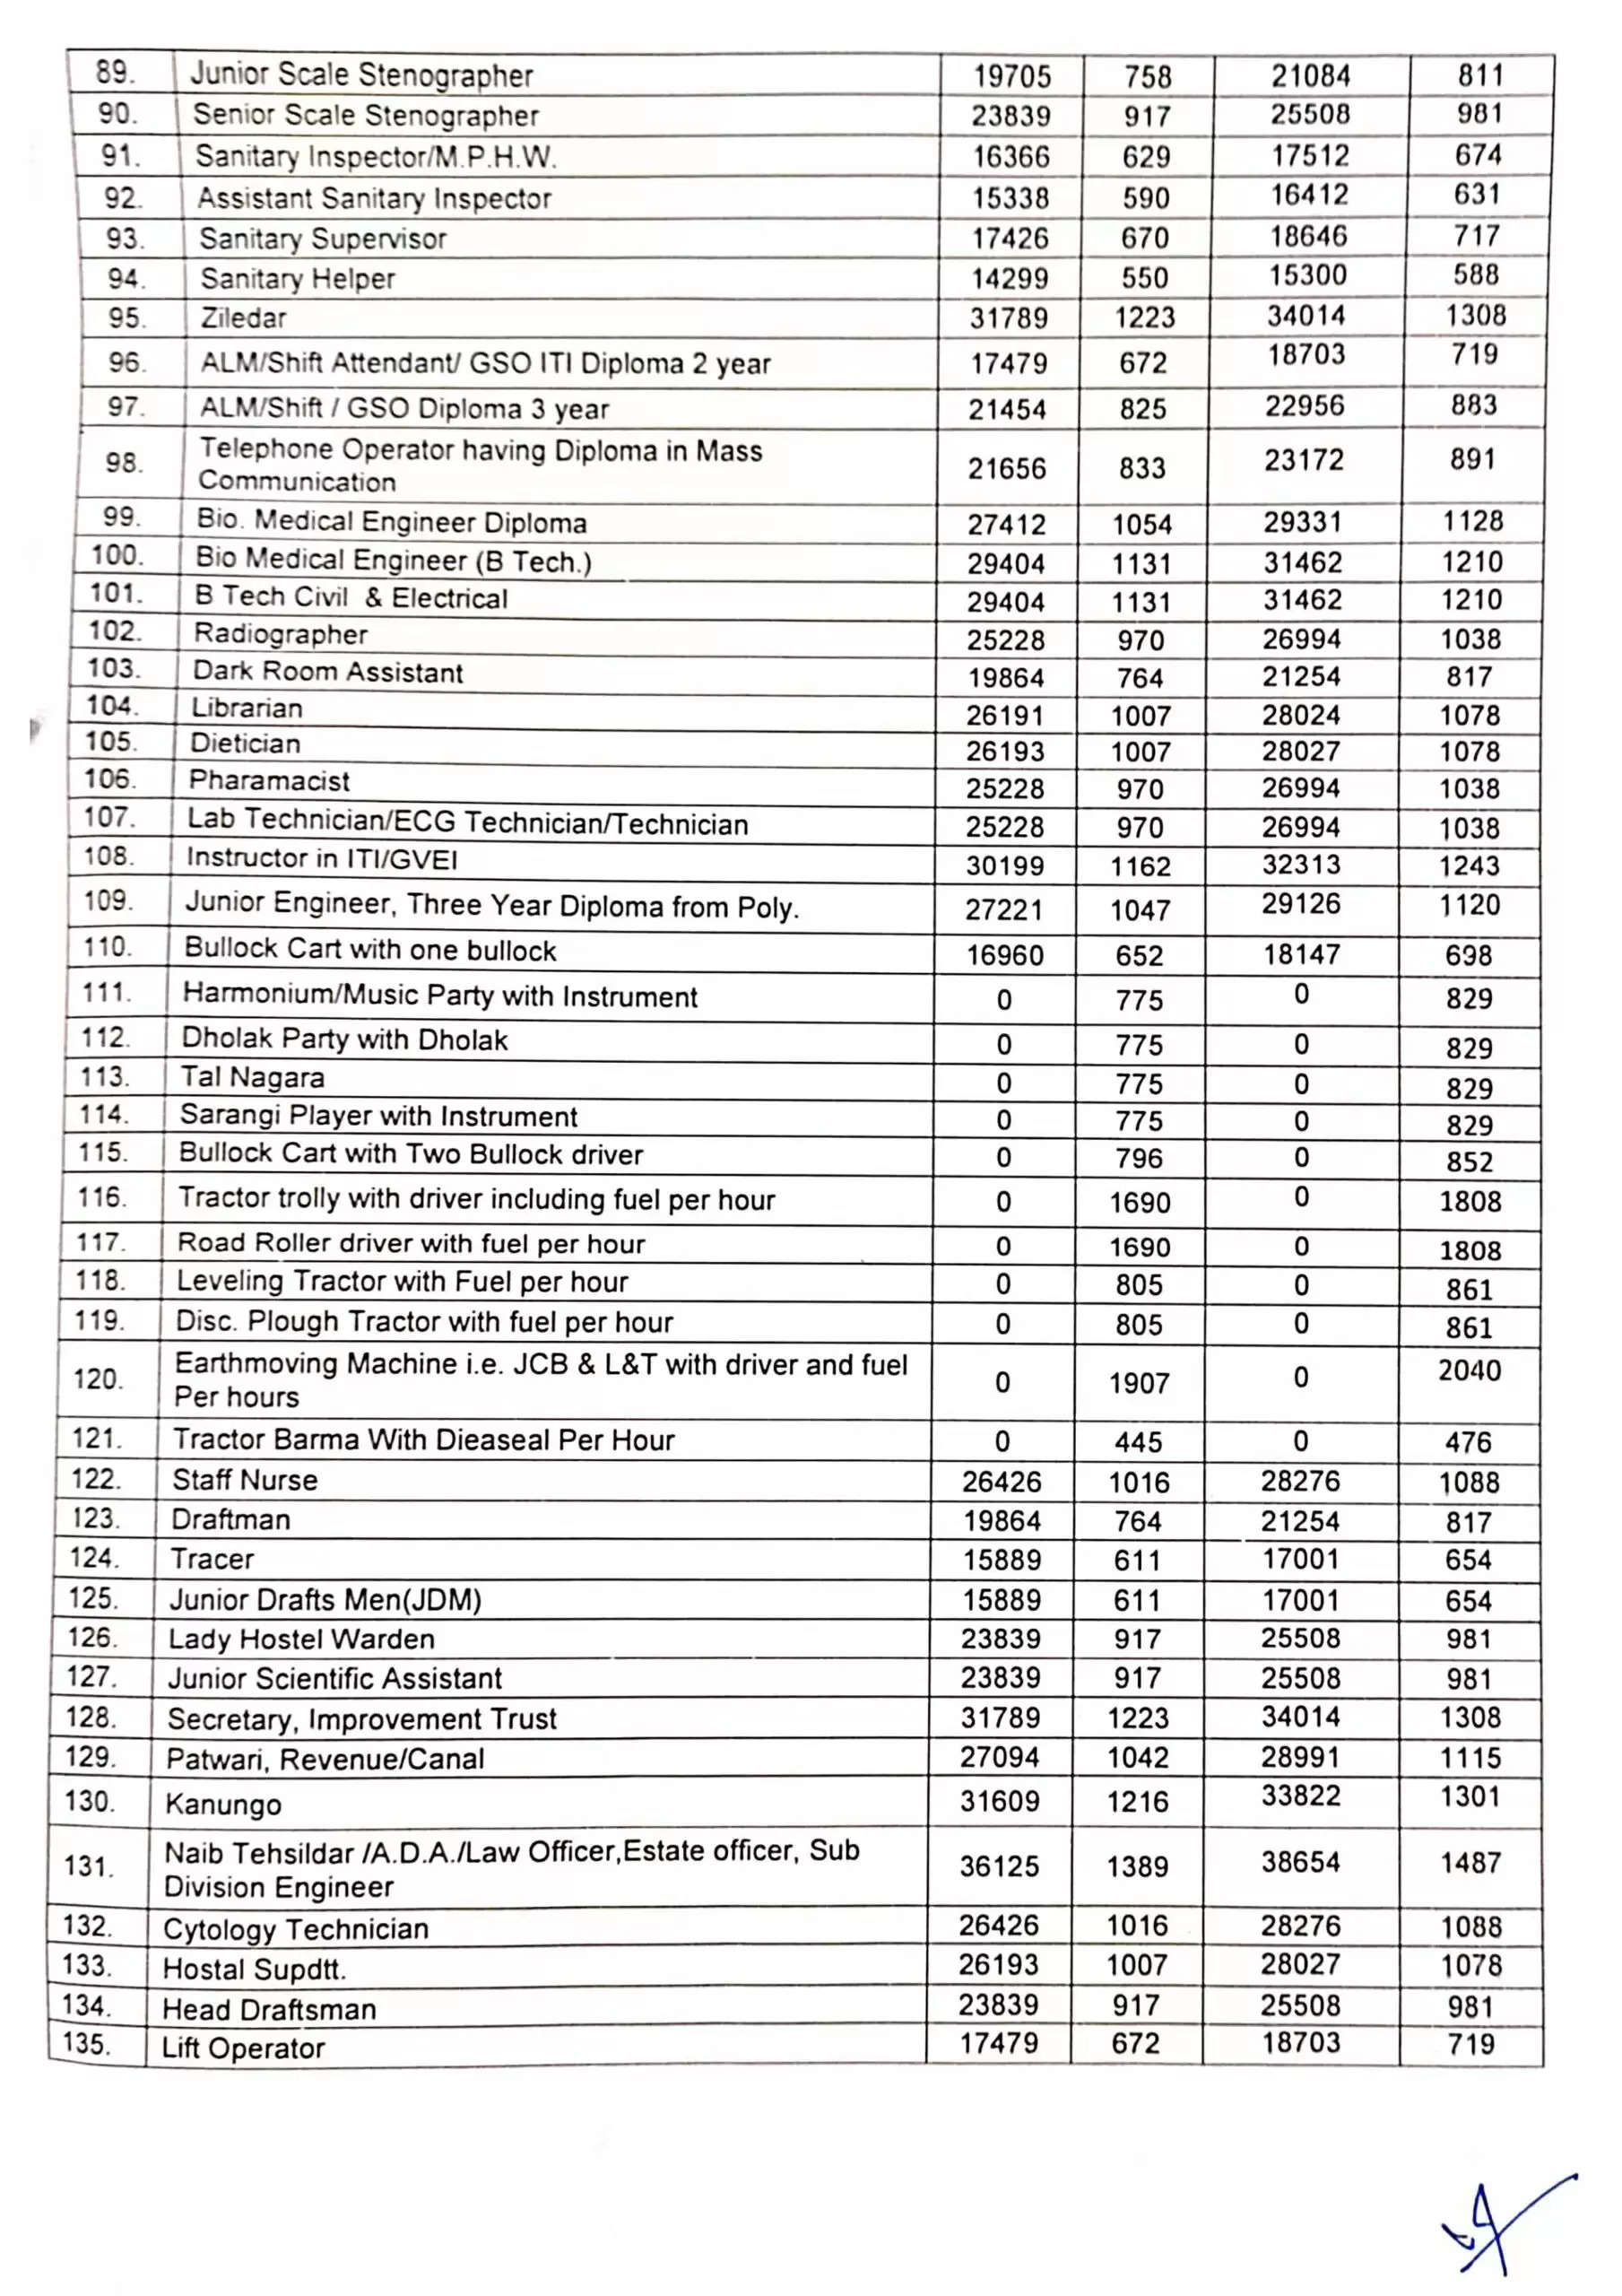 Hisar Dc Rate Job List 2021-22: हिसार में डीसी रेट निर्धारित, देखिये कौनसी नौकरी पर कितना मिलेगा वेतन ?